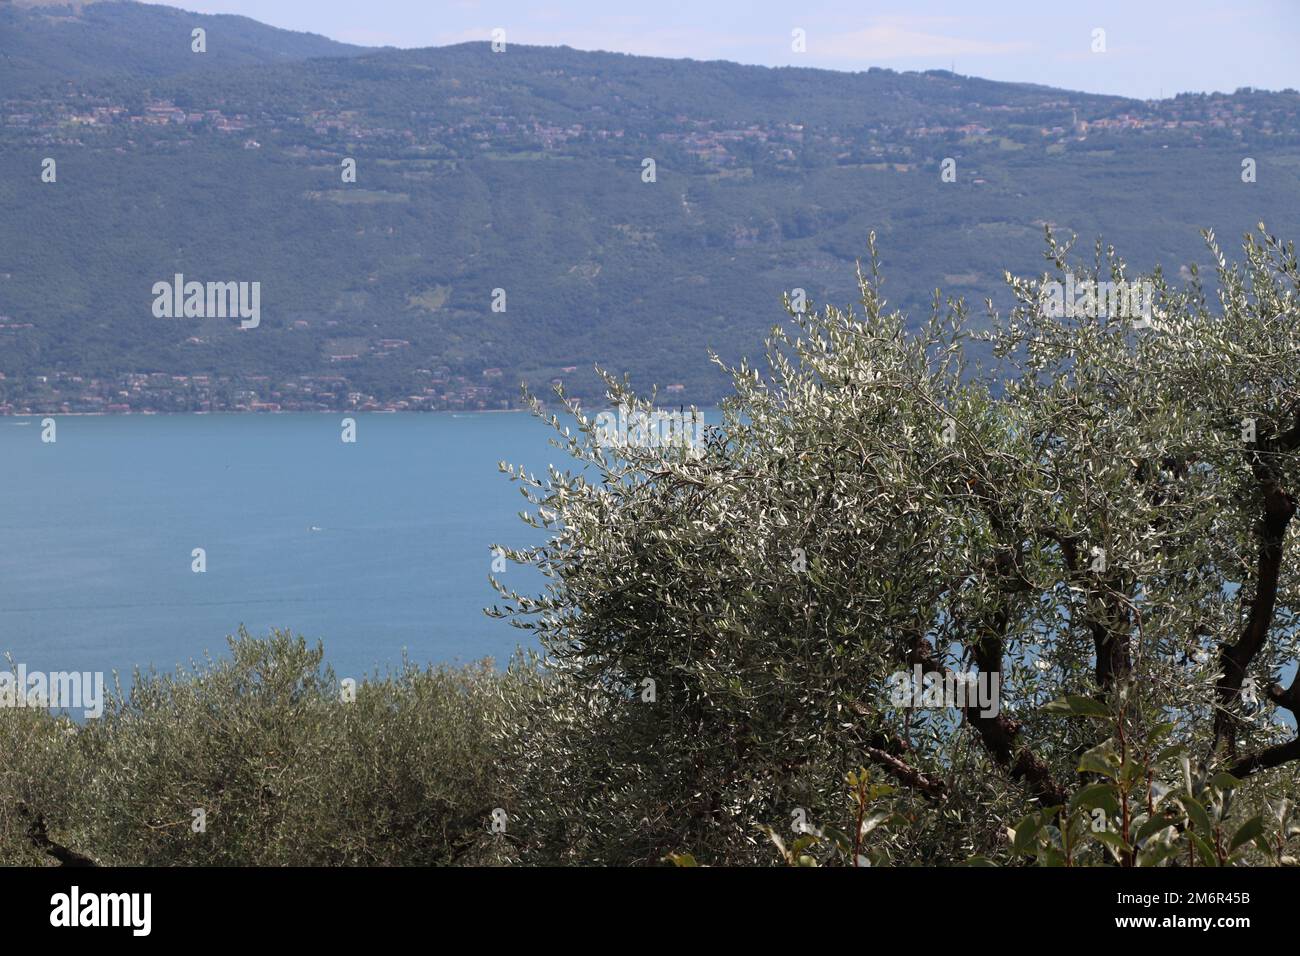 Landscape of Garda lake, Italy. High quality photo Stock Photo